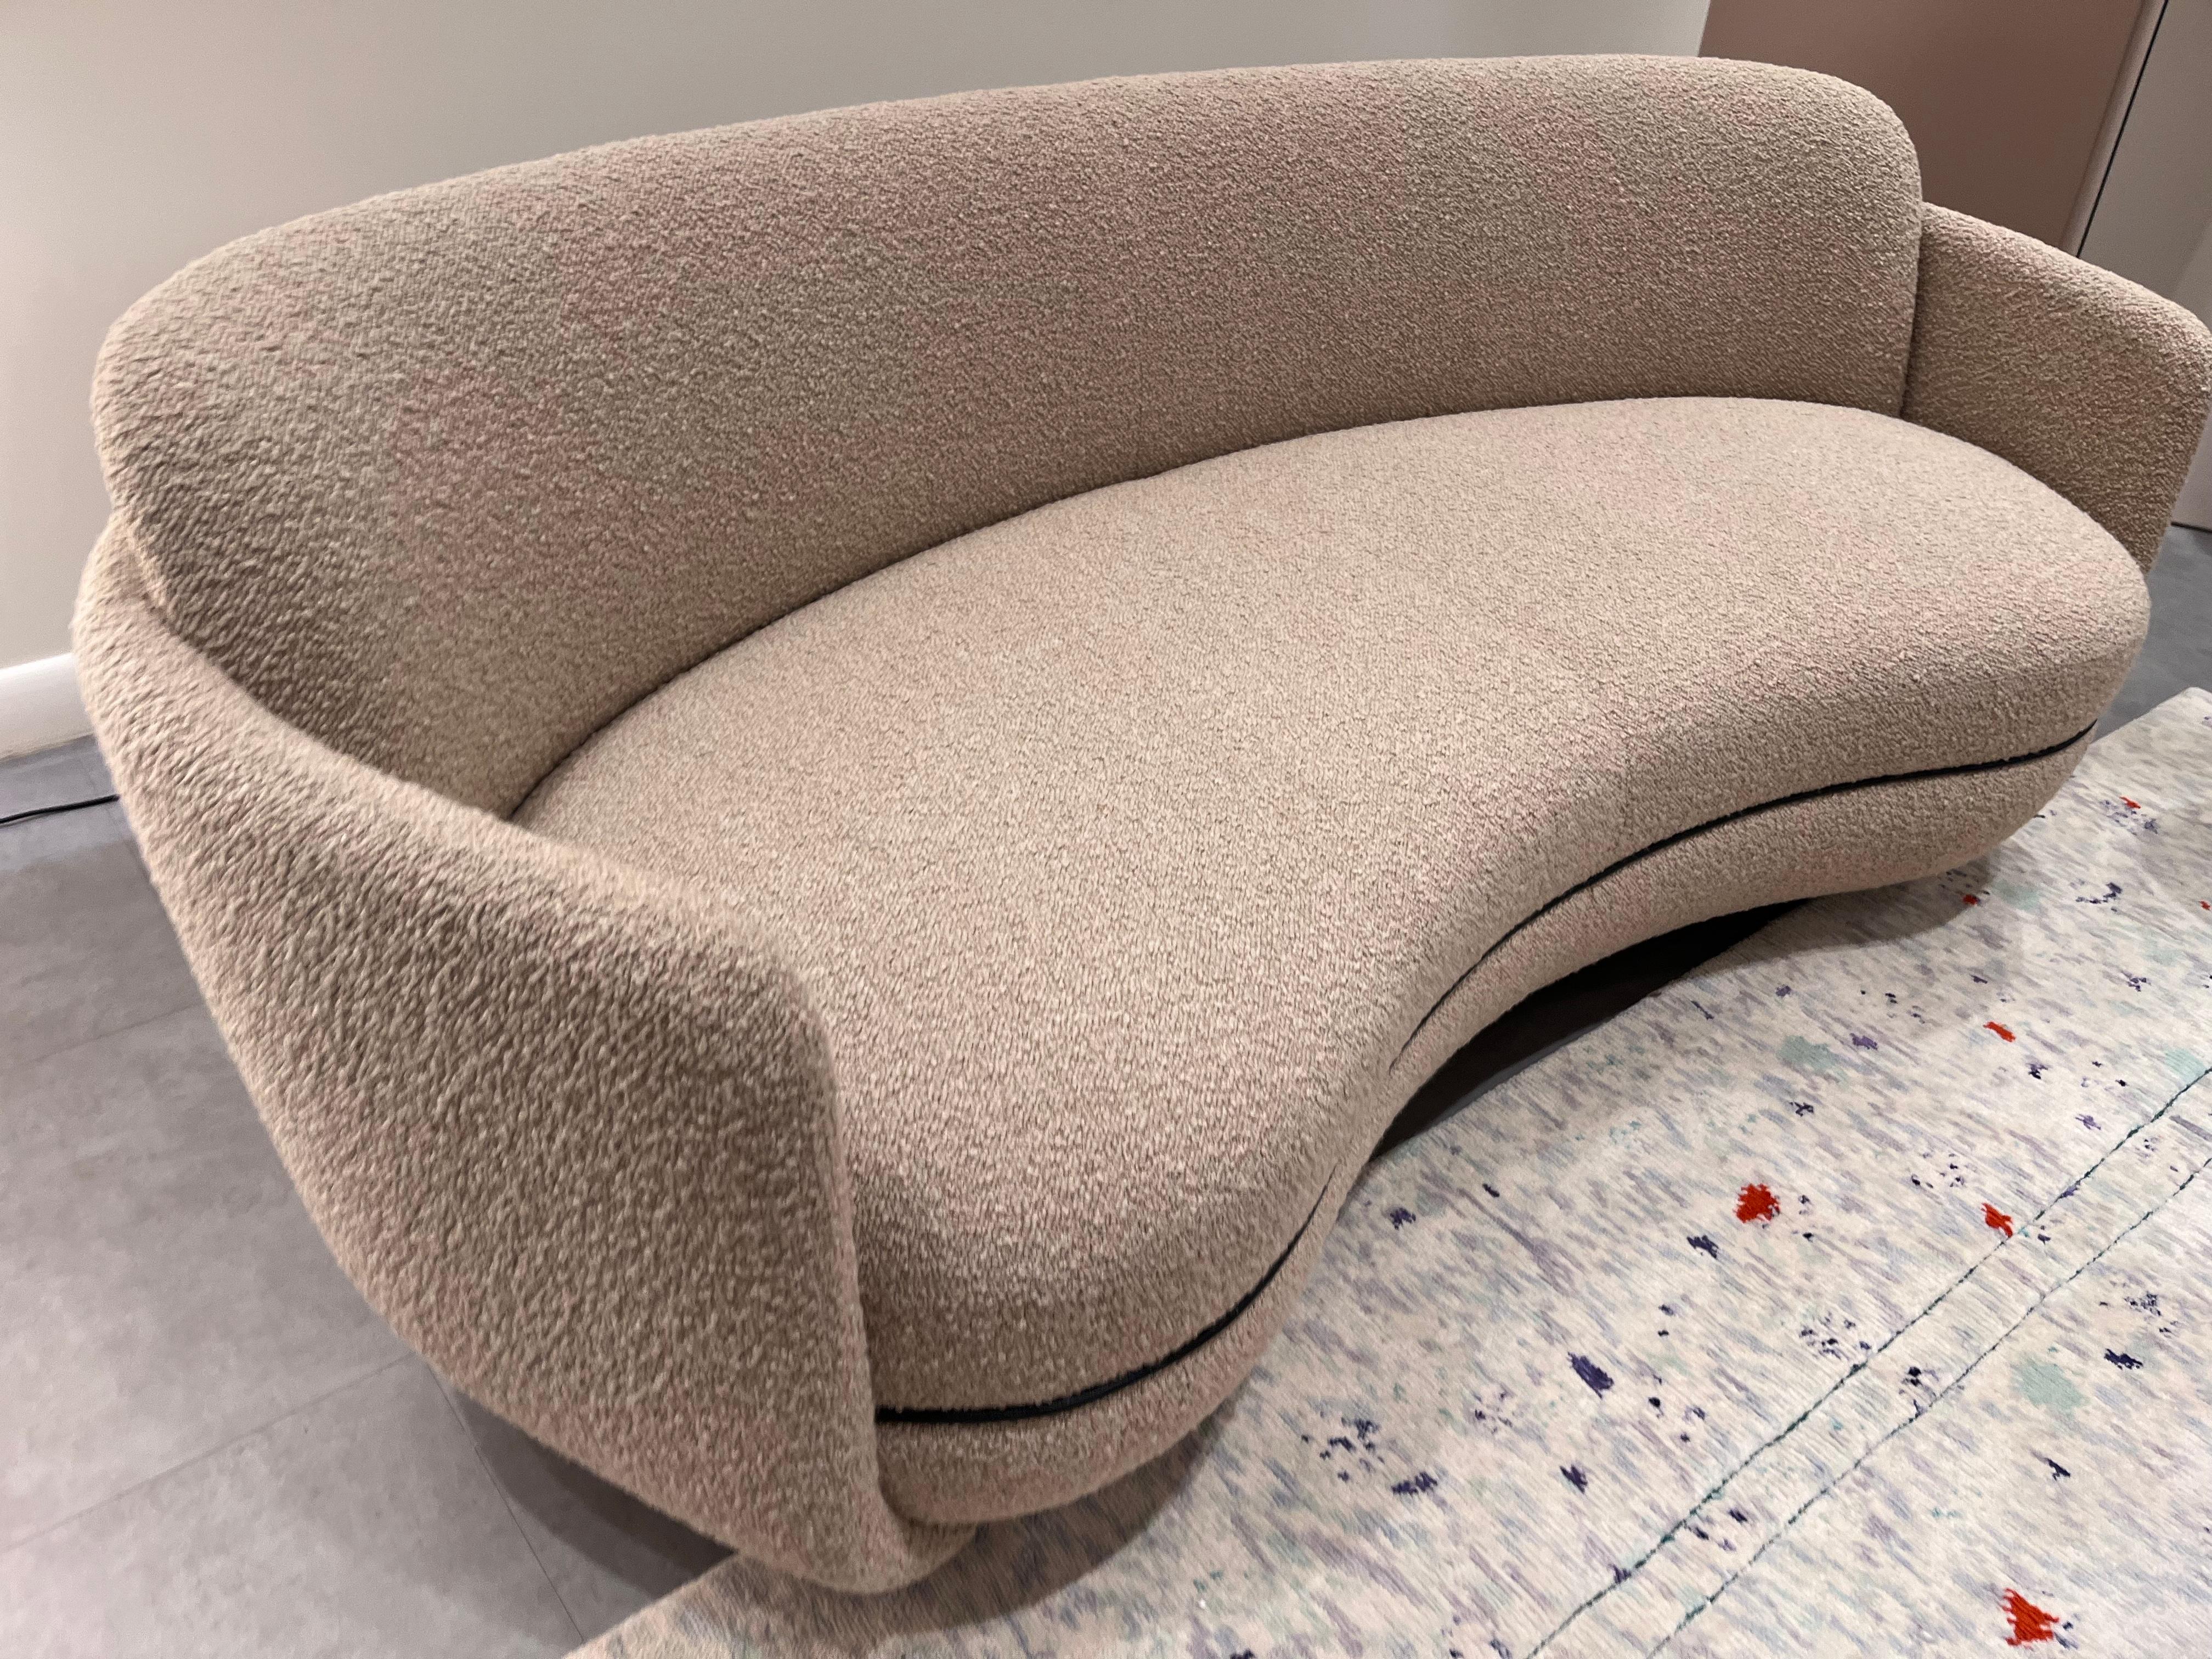  Wittmann Miles Curved Sofa by Sebastian Herkner in STOCK 1